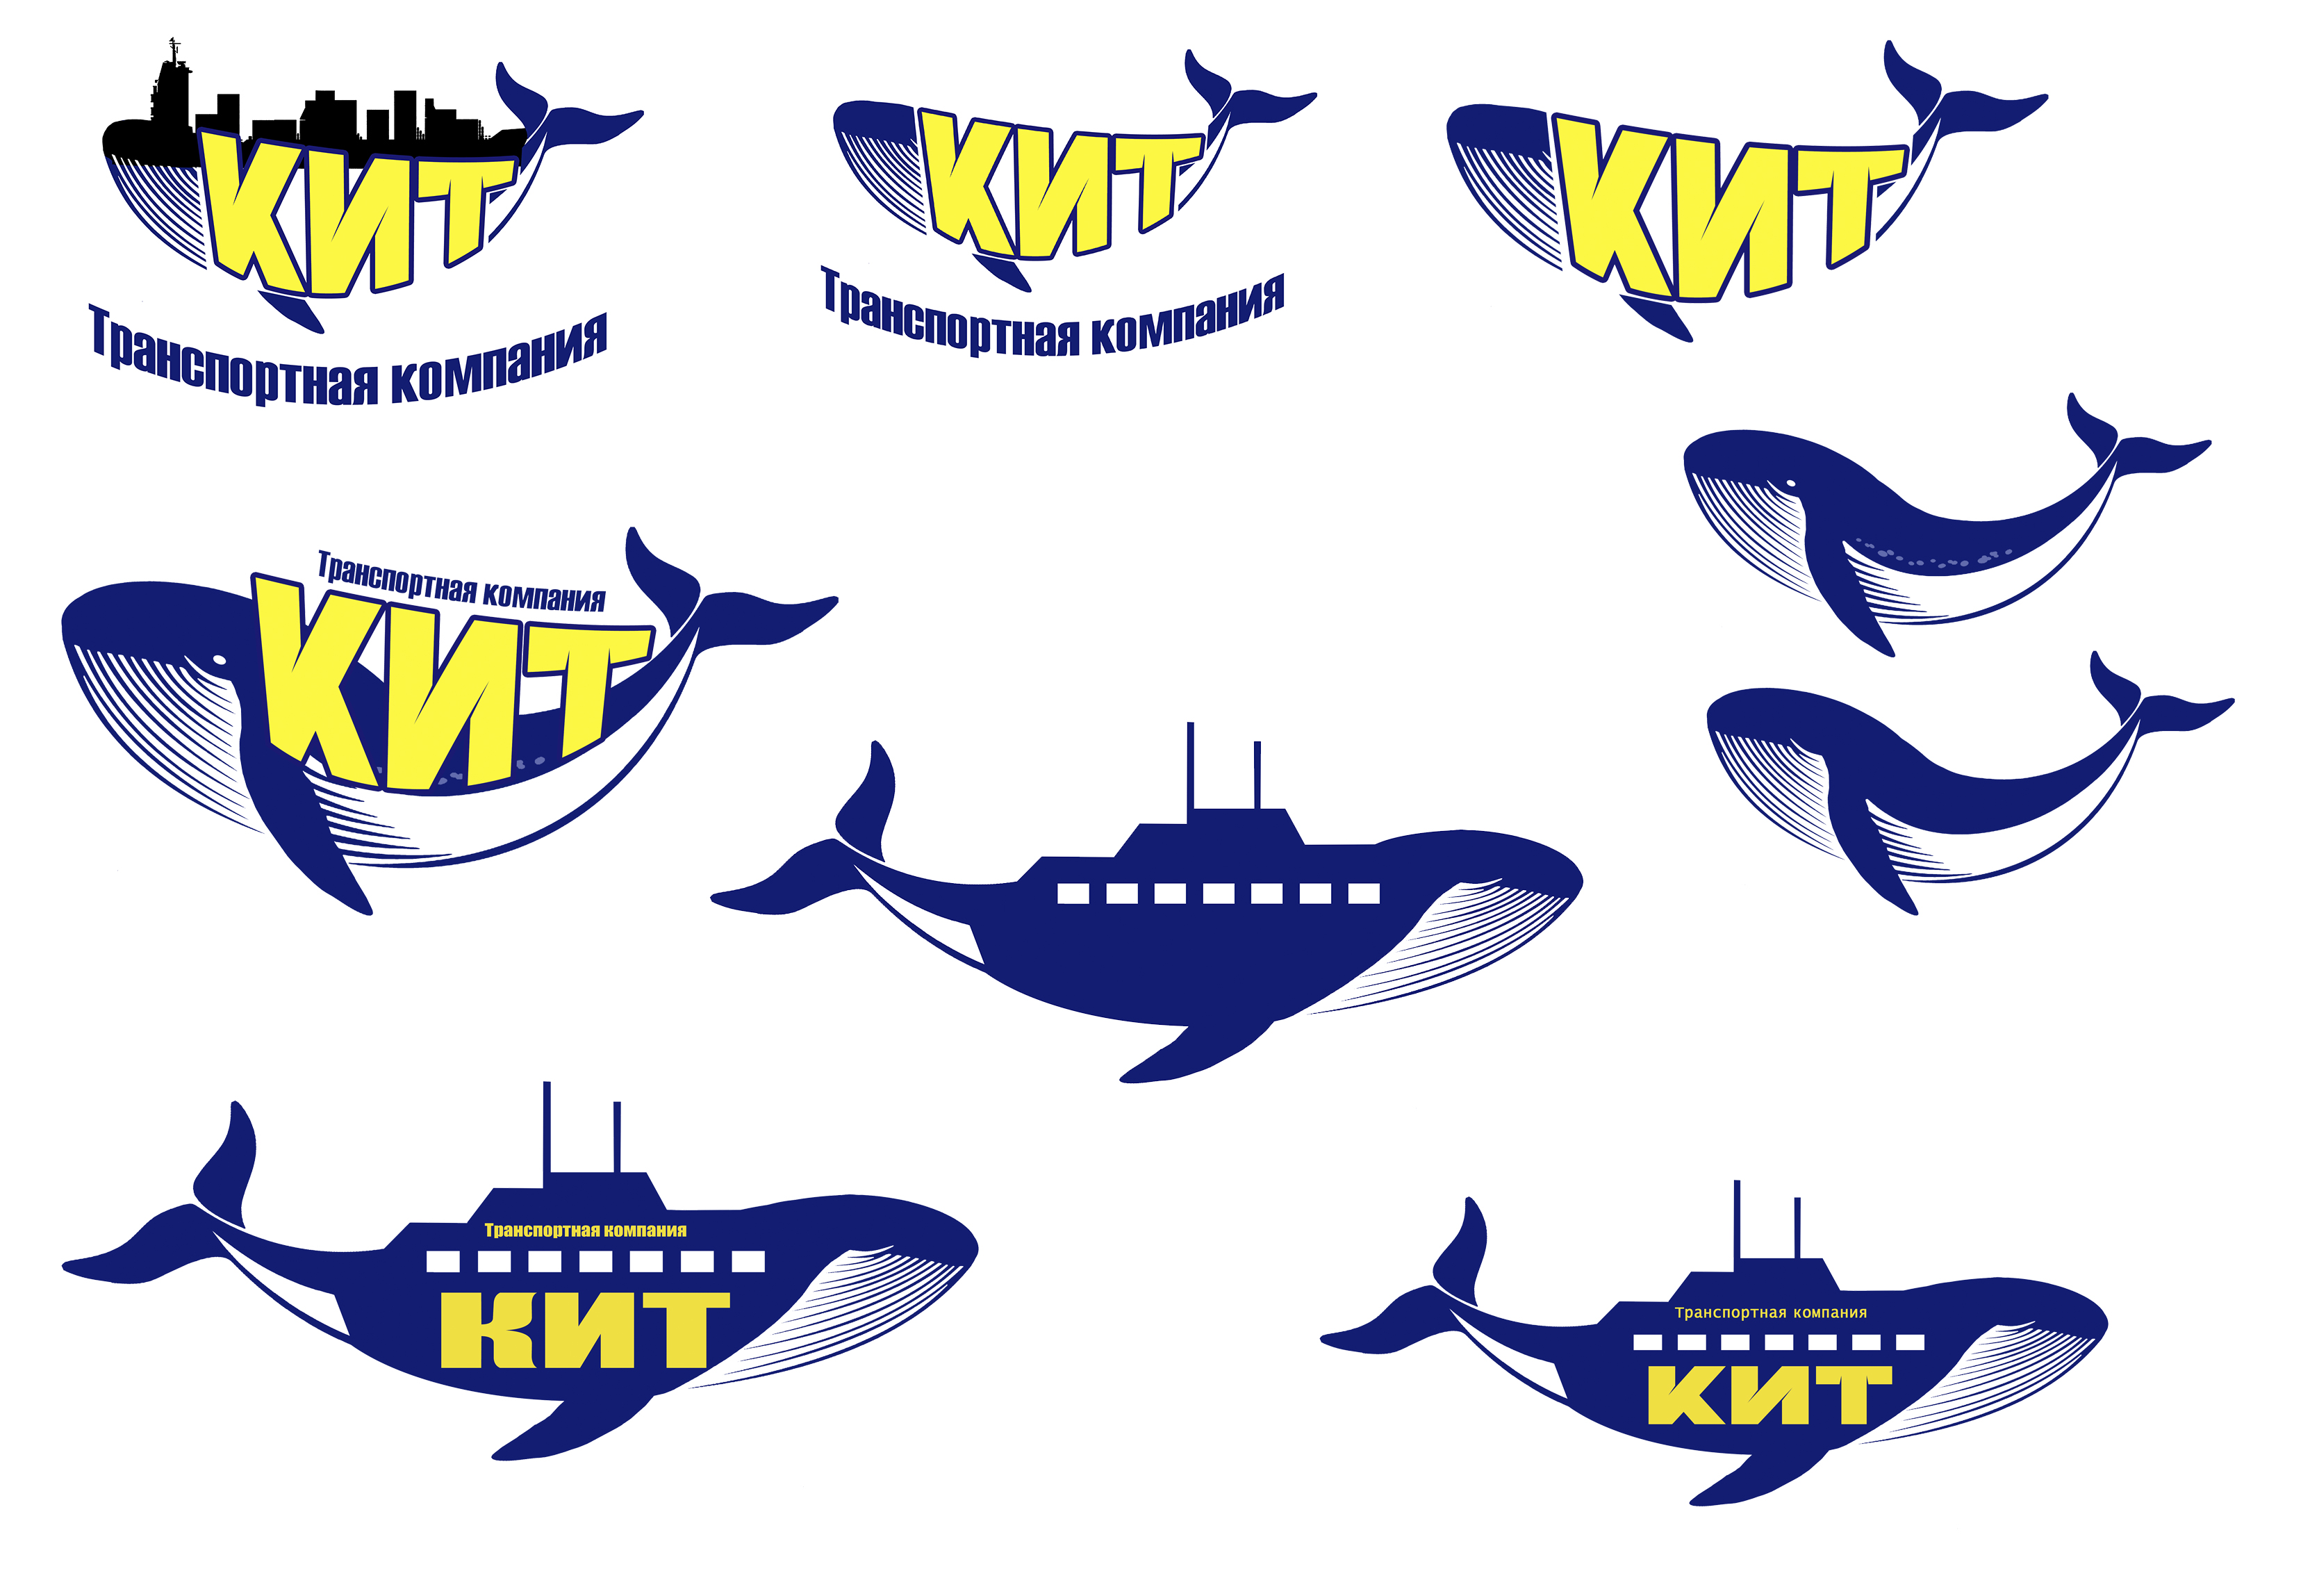 Кит доставка номер. Кит транспортная компания логотип. ТК кит логотип транспортная компания. Значок ТК кит. Транспортная компания кит GTD логотип.